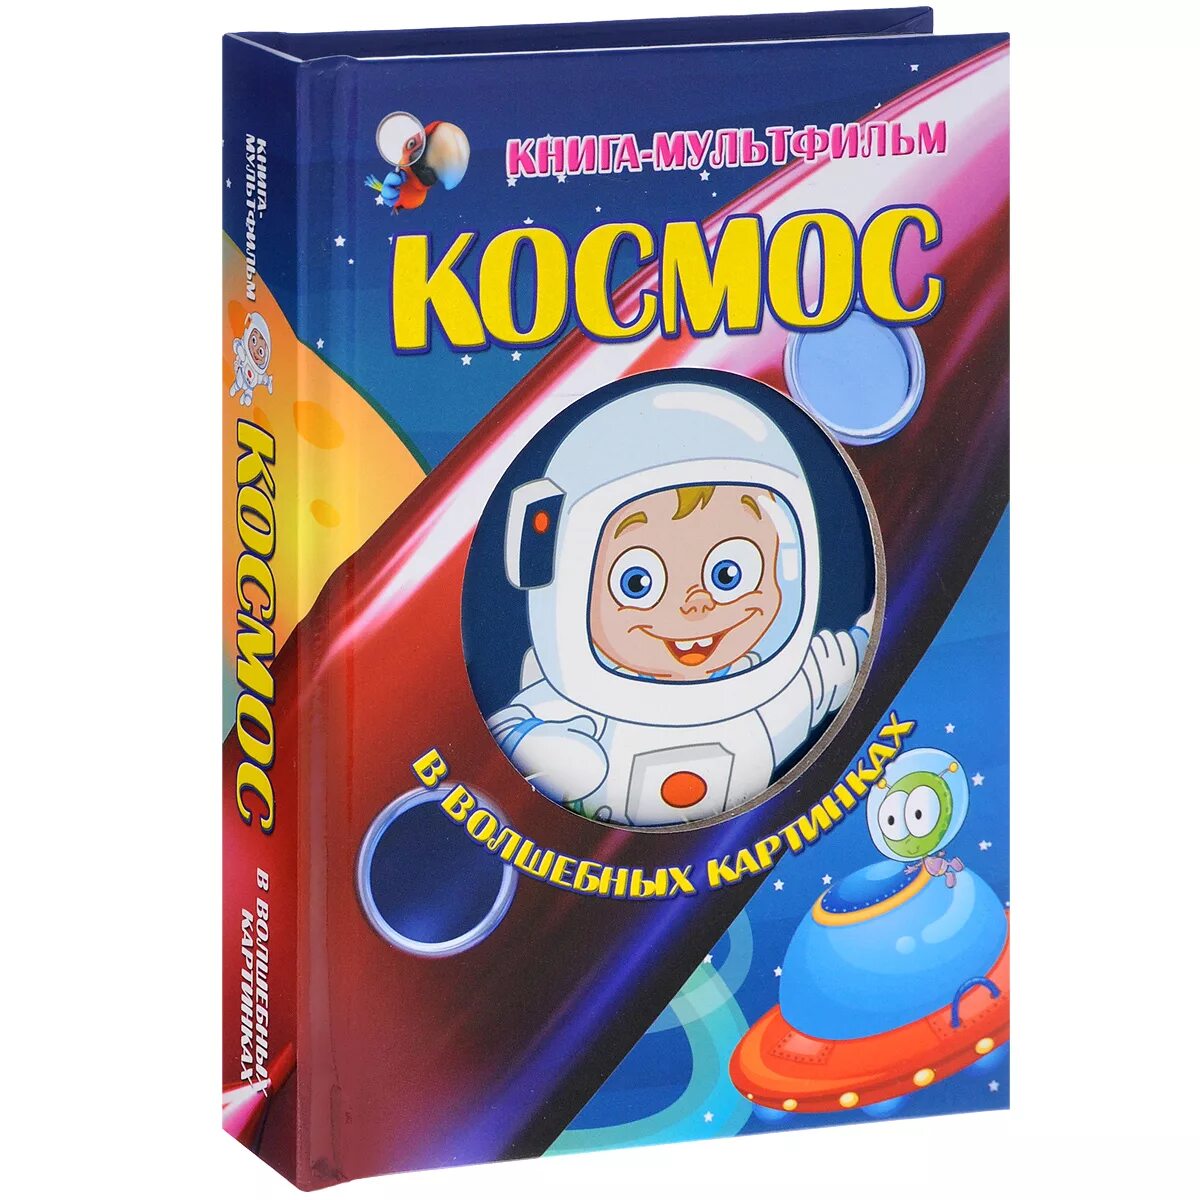 Книжка космос для детей. Детские книжки про космос. Книги о космосе для детей. Детская книга про космос.